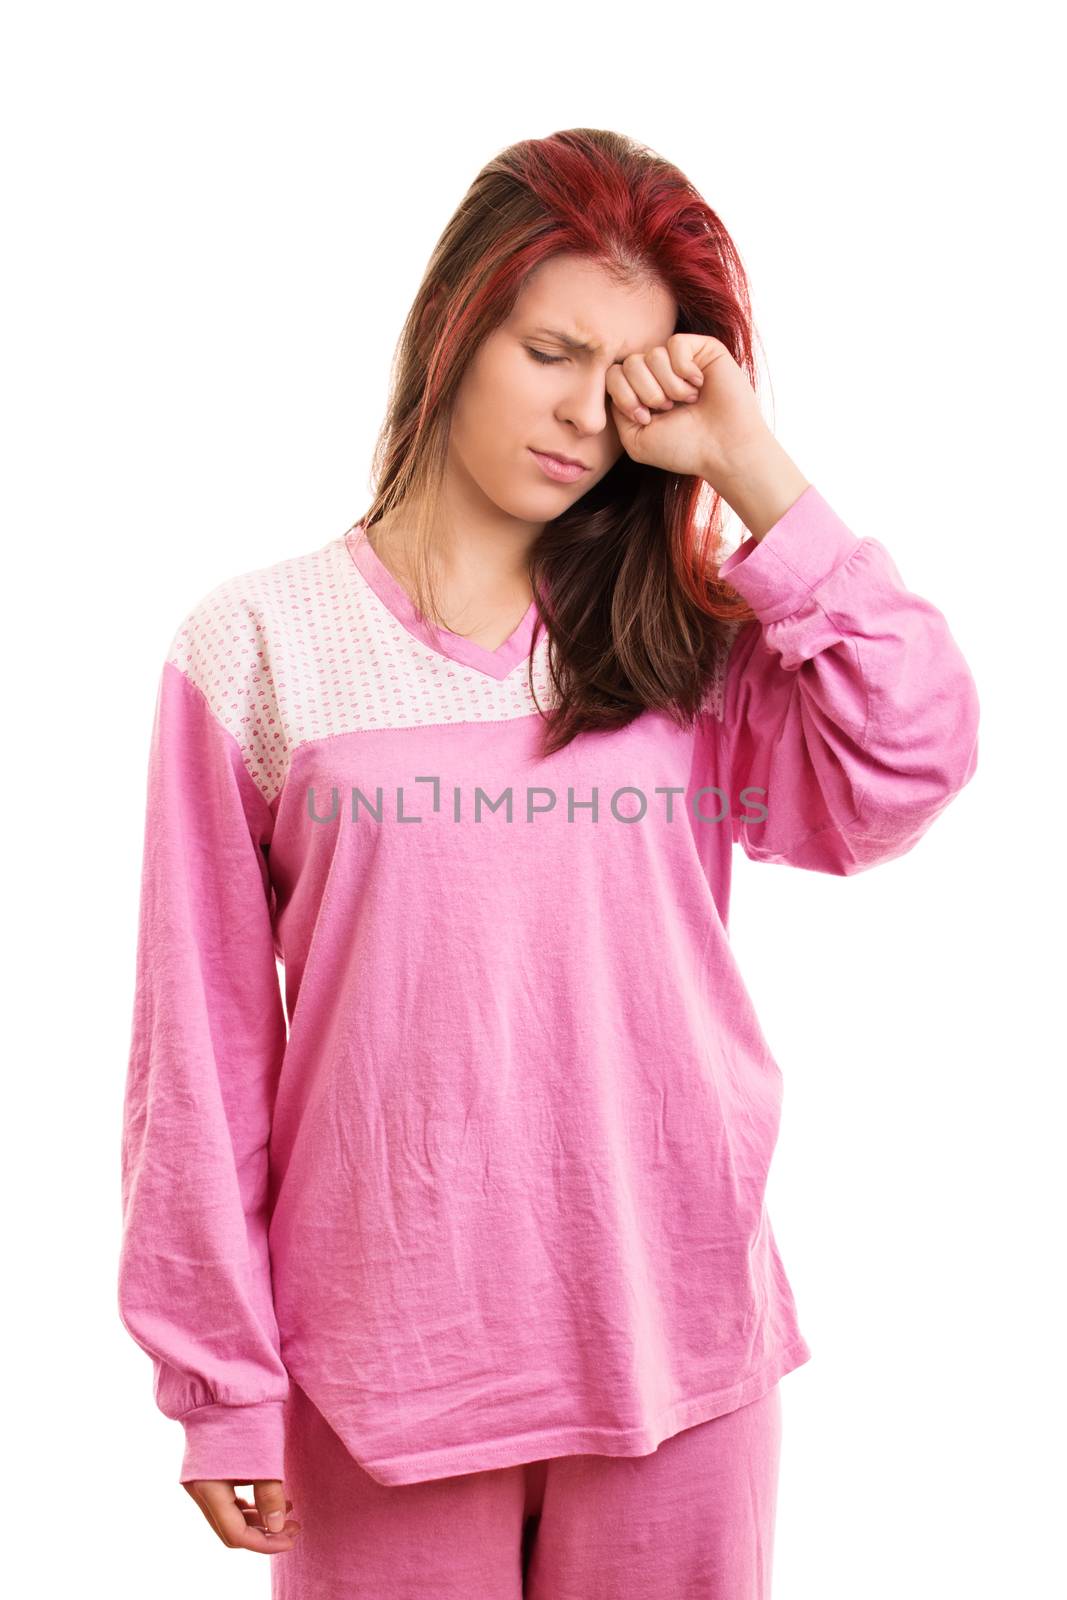 Sleepy girl in pink pajamas rubbing eyes by Mendelex